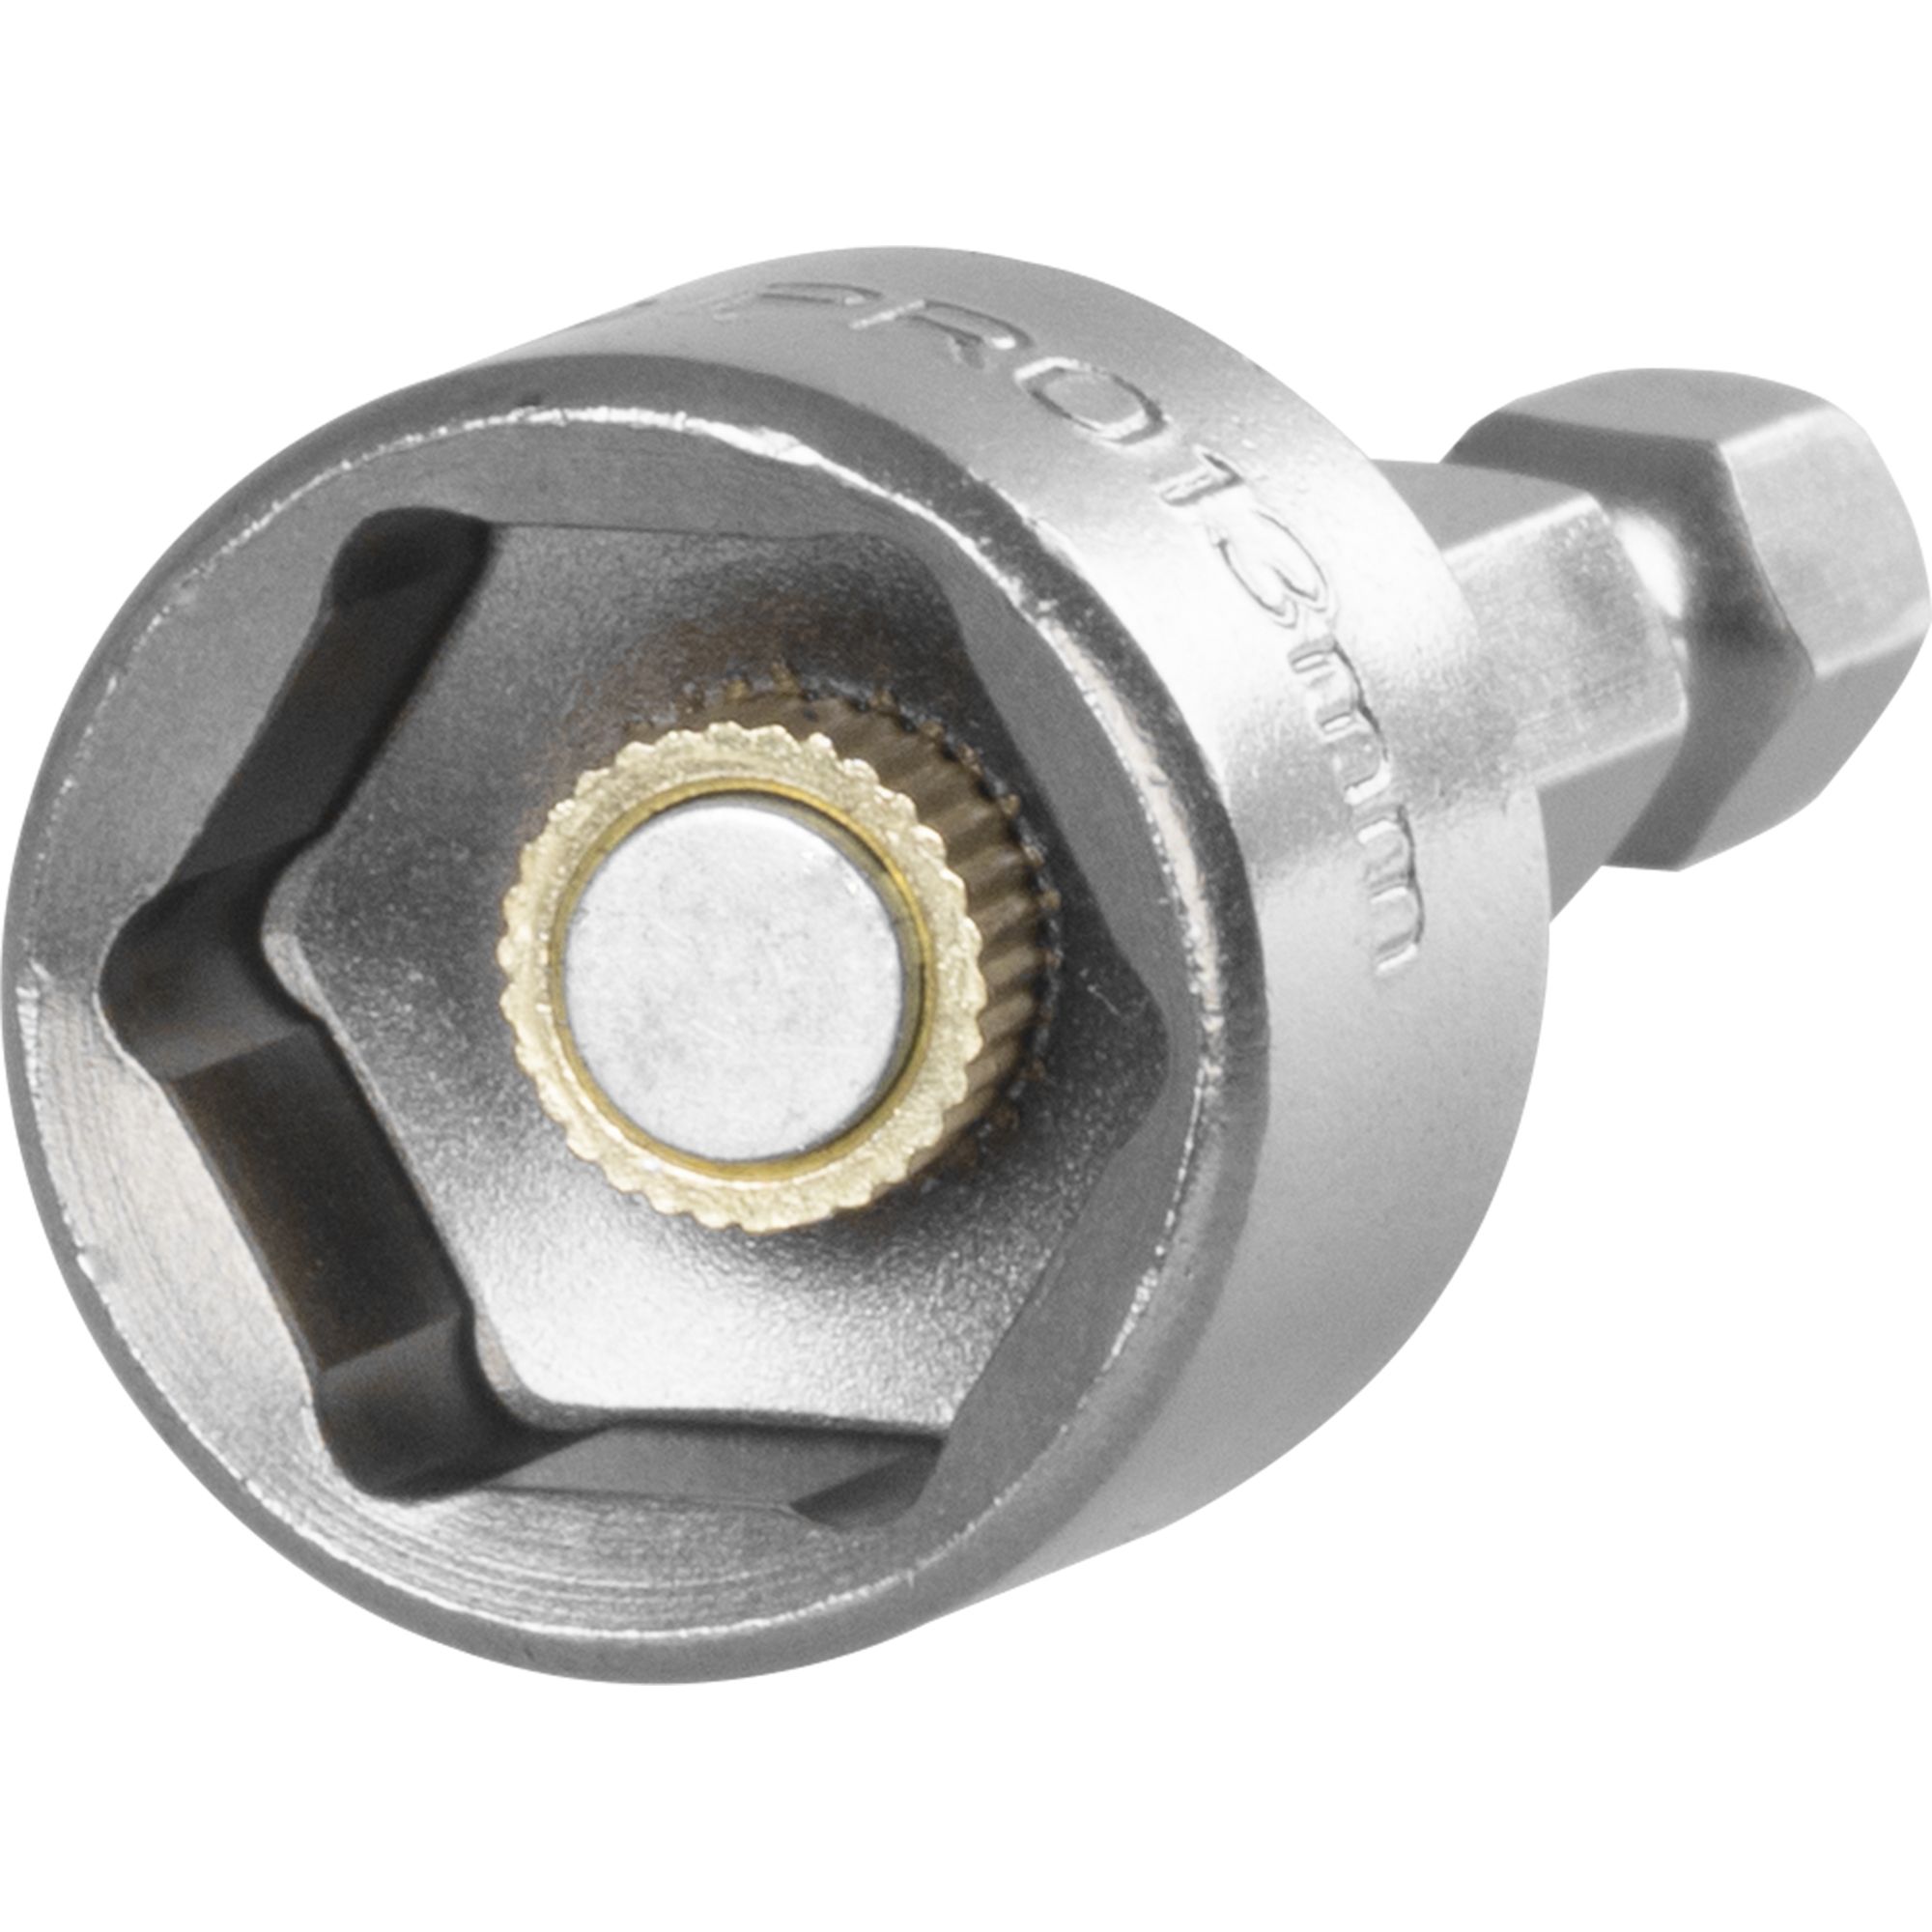 Klíč nástrčný 13mm, magnet, HEX 1/4", STREND PRO 0.030000 Kg GIGA Sklad20 18615 94